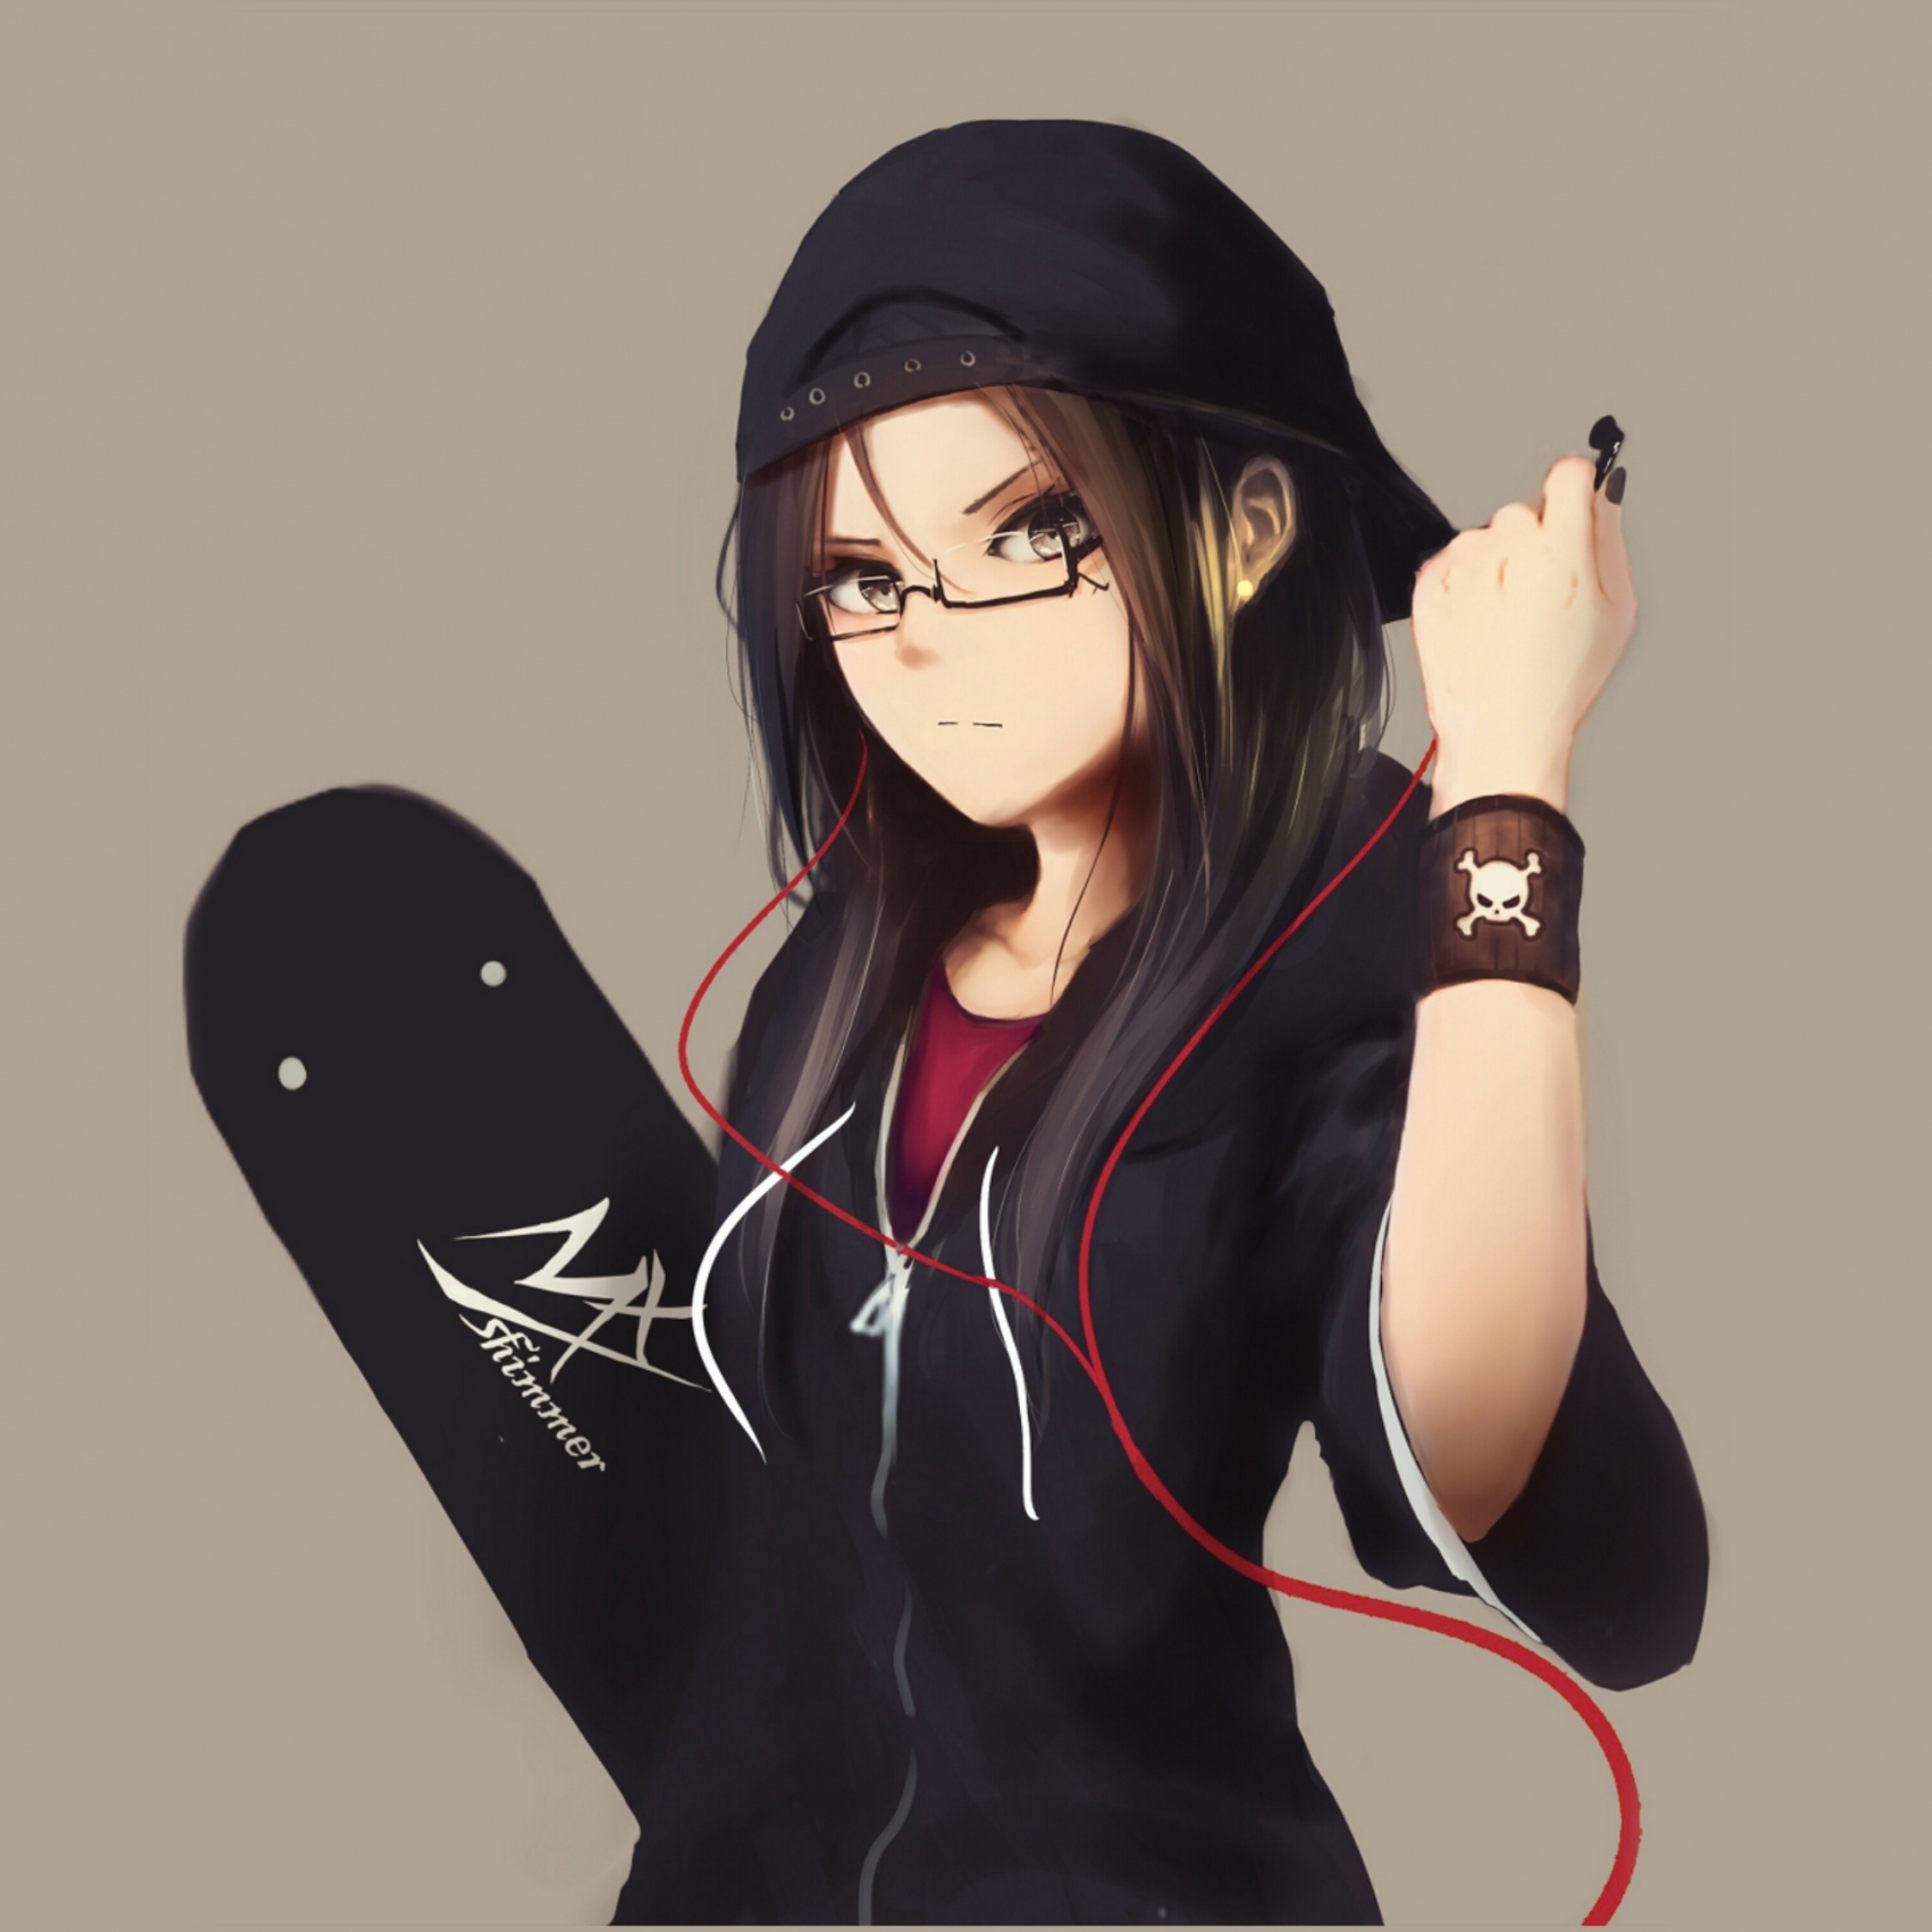 Anime Girl With Skate Board, Urban, Art, Wallpaper - Dark Cool Anime Girl -  2248x2248 Wallpaper 